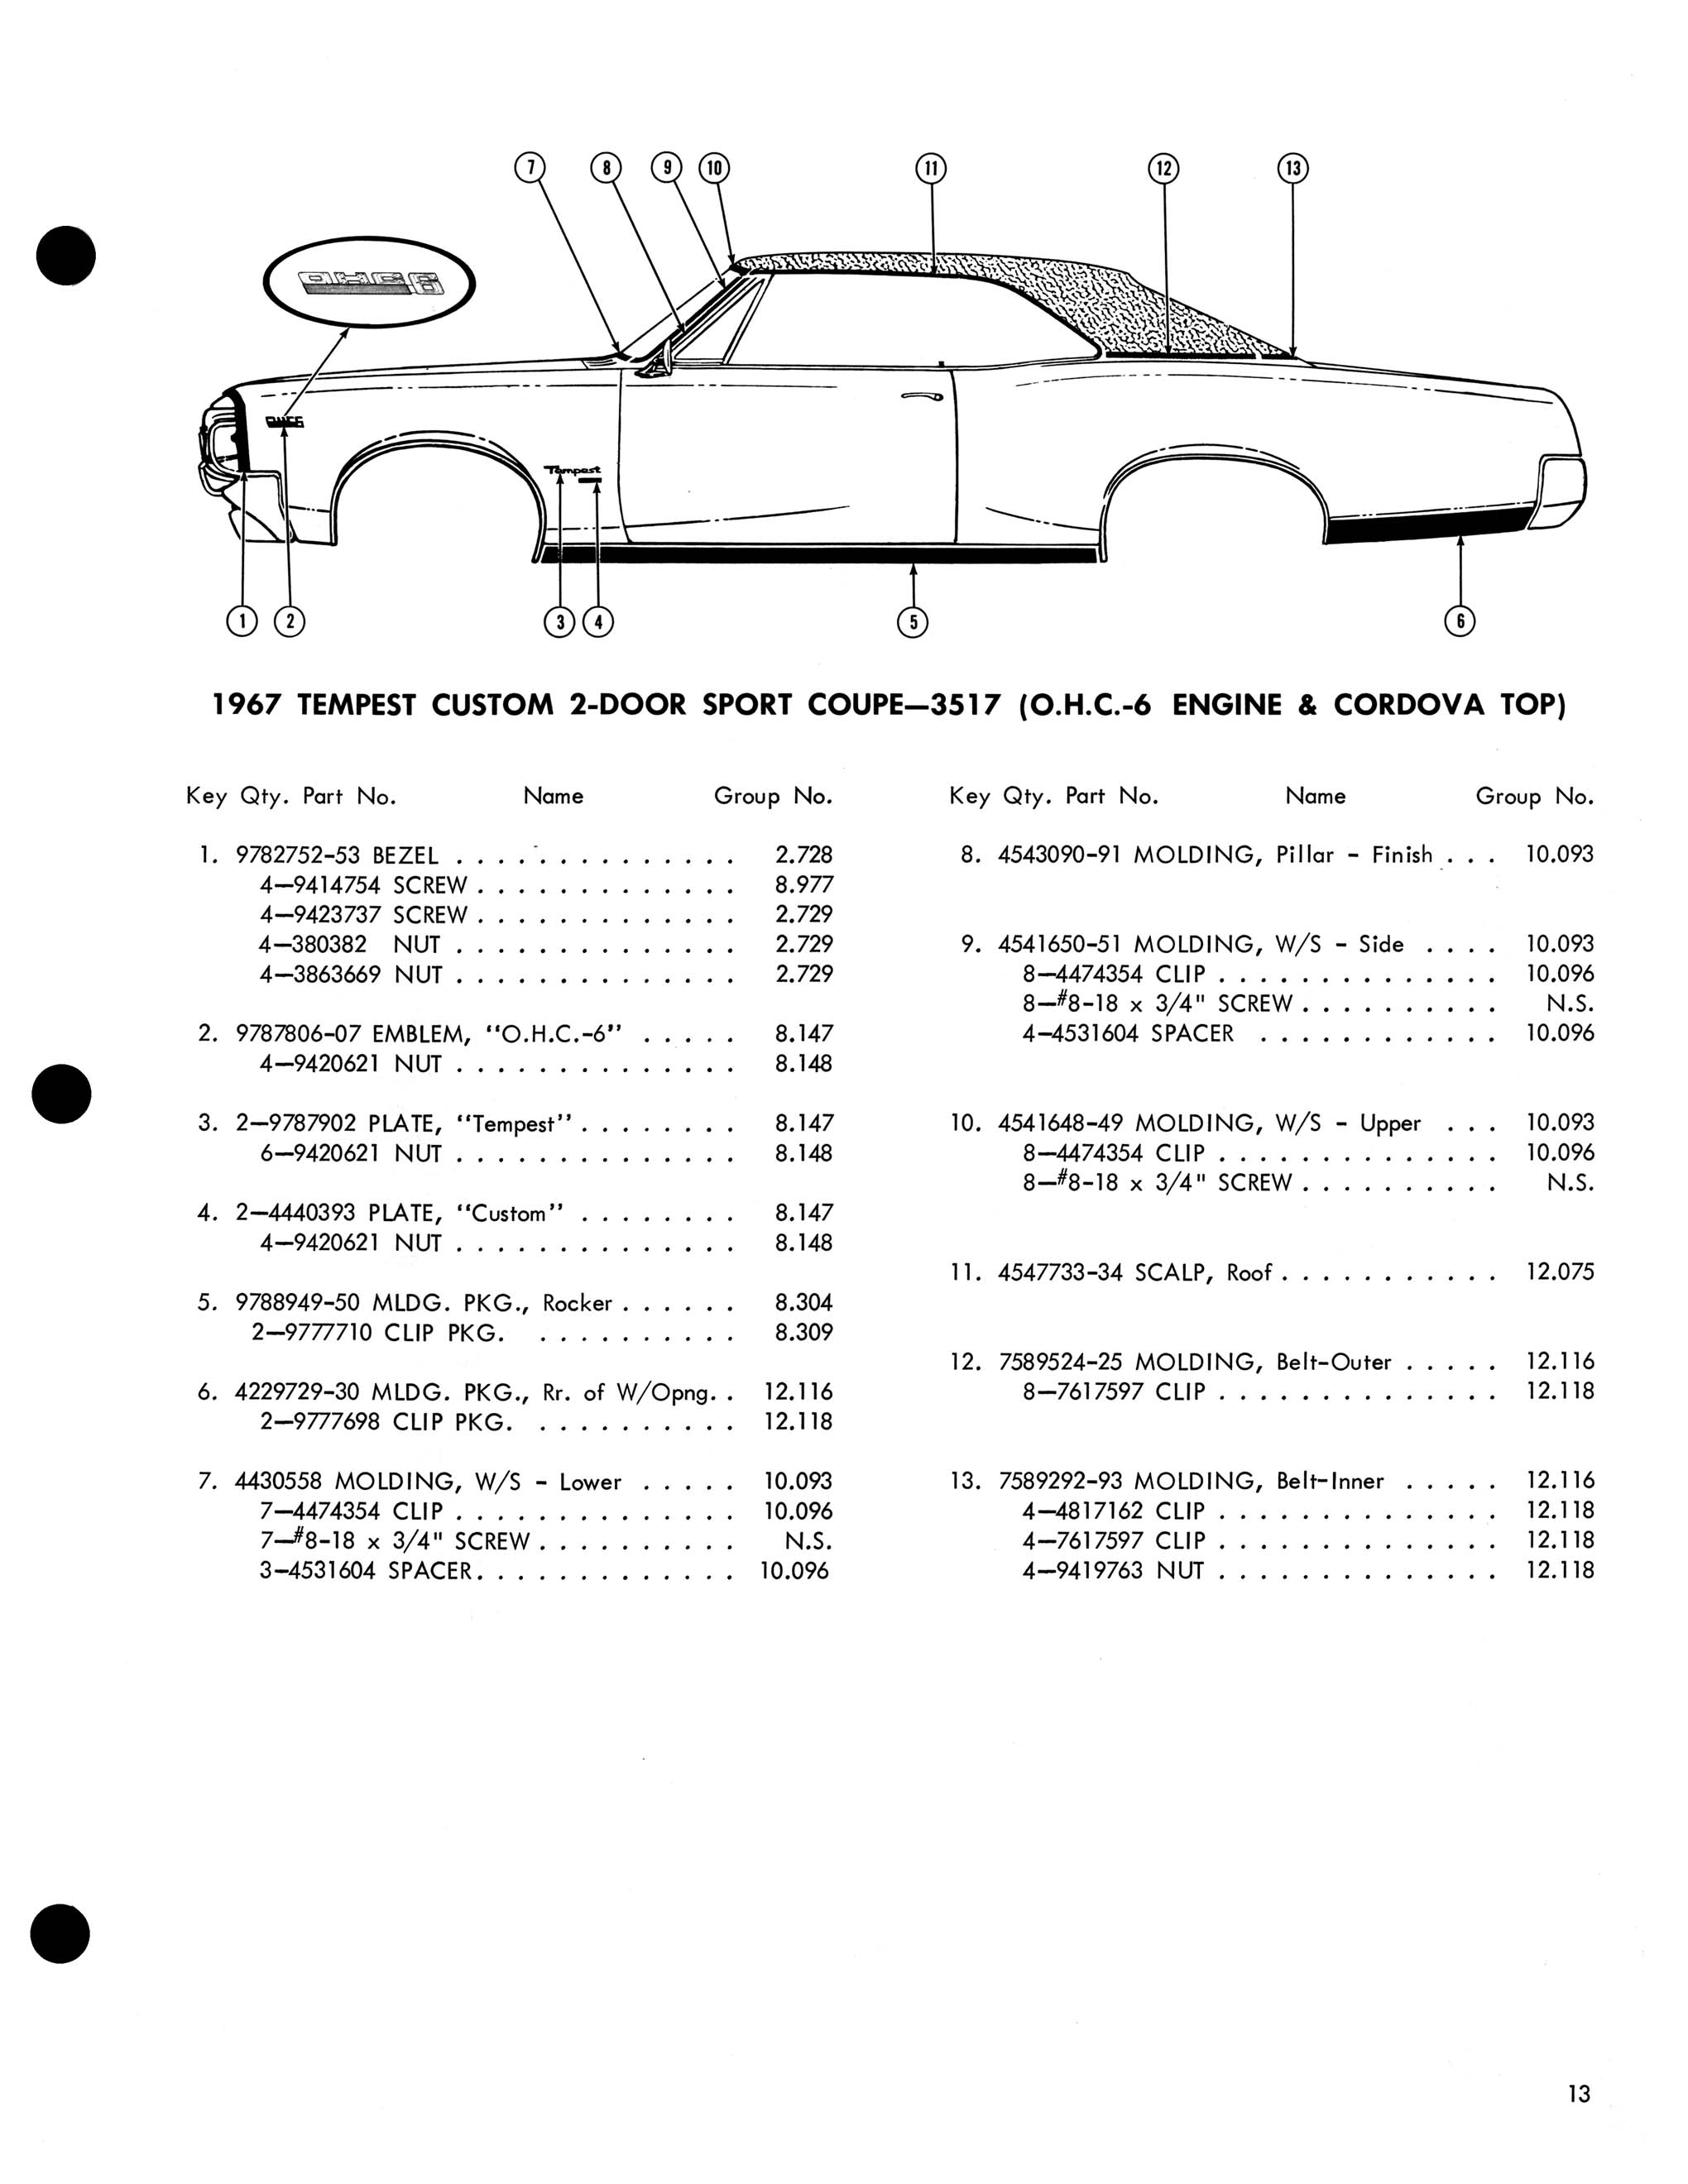 1967 Pontiac Molding and Clip Catalog-13